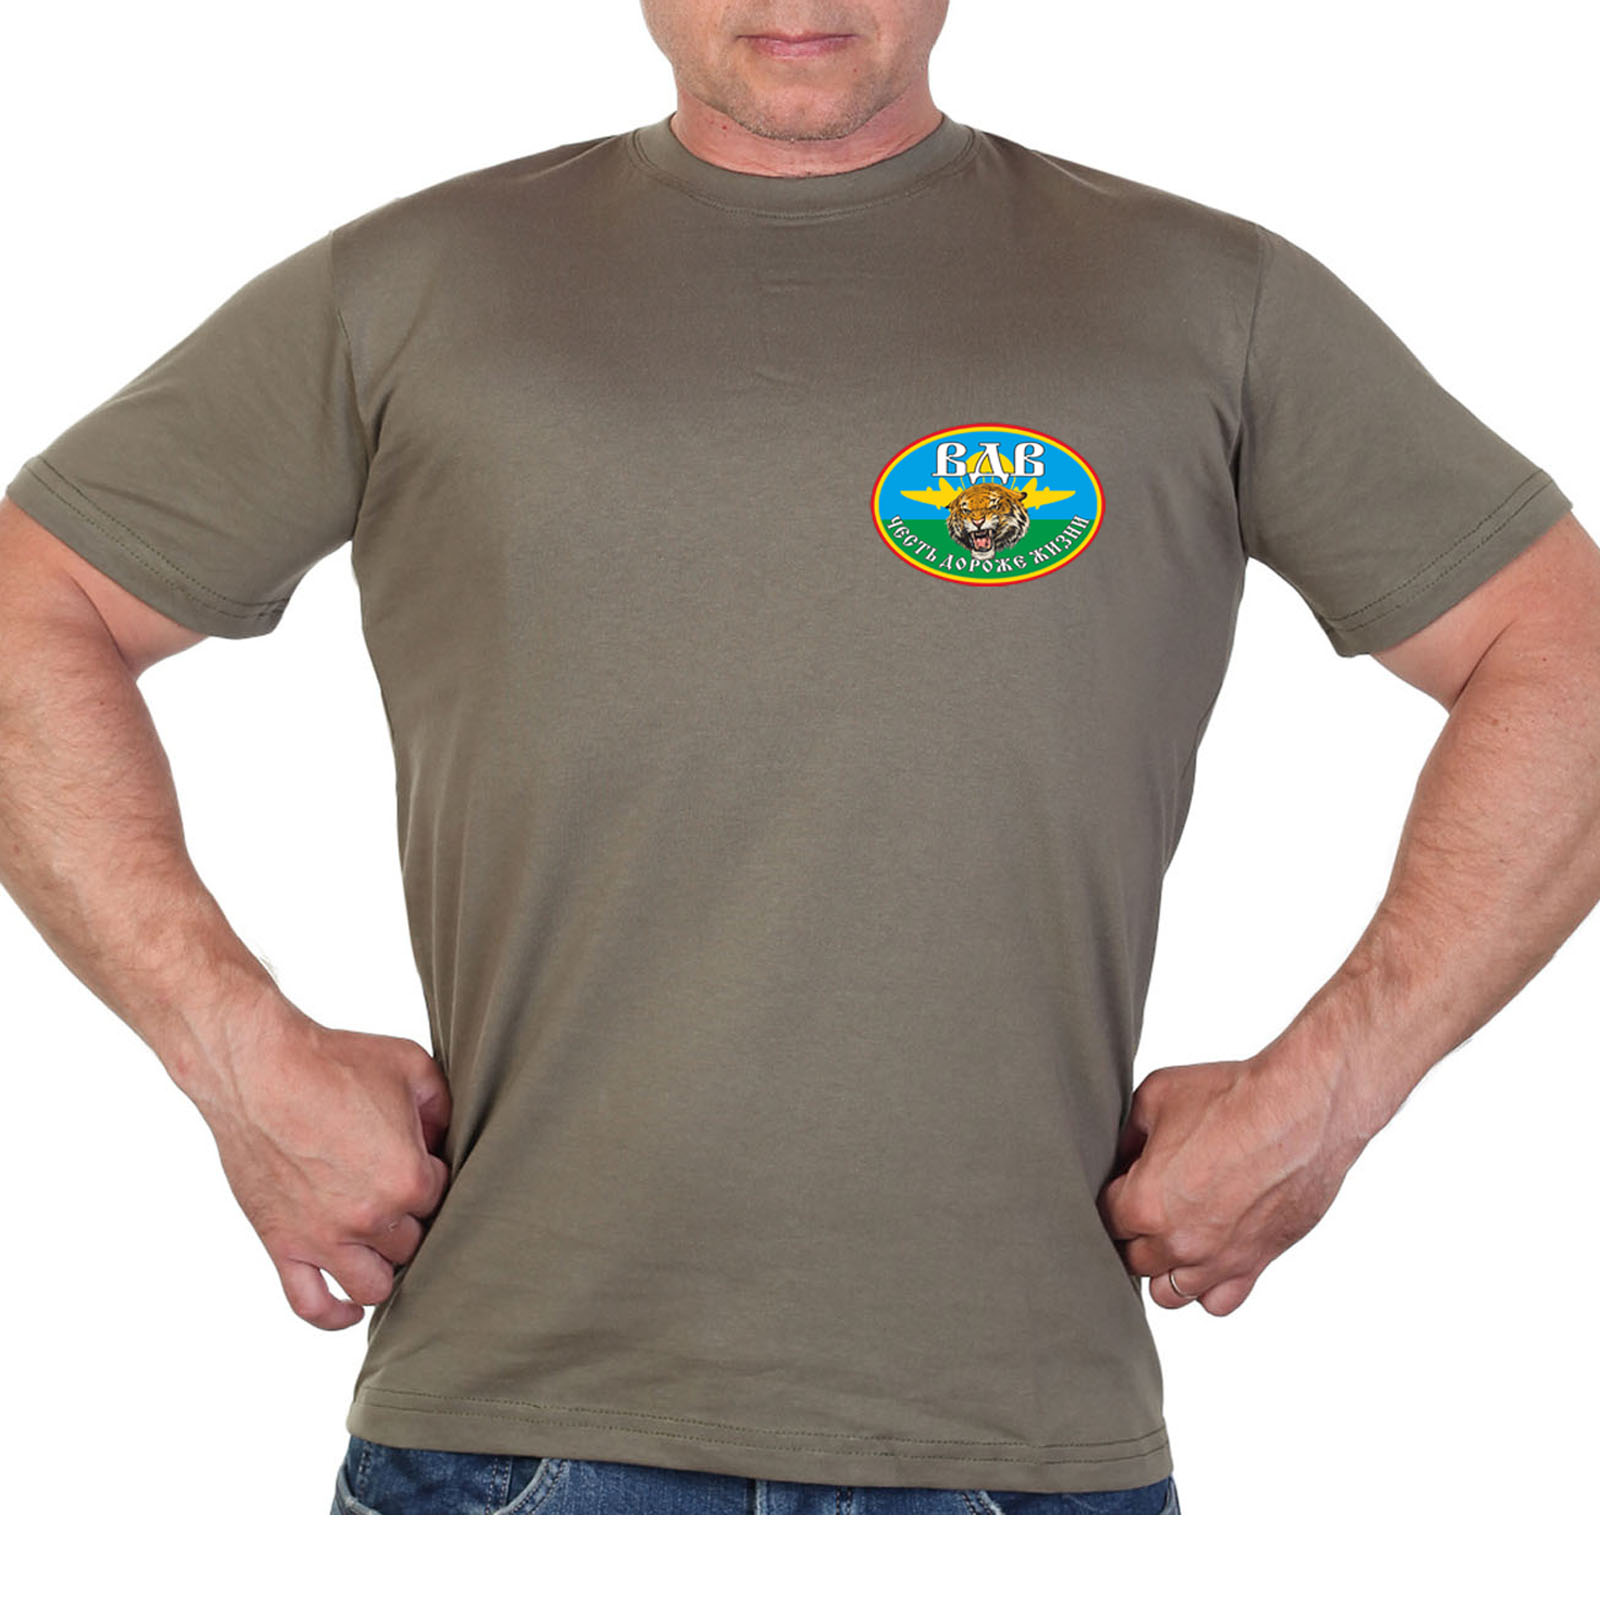 Оливковая футболка с термотрансфером "Воздушно-десантные войска"